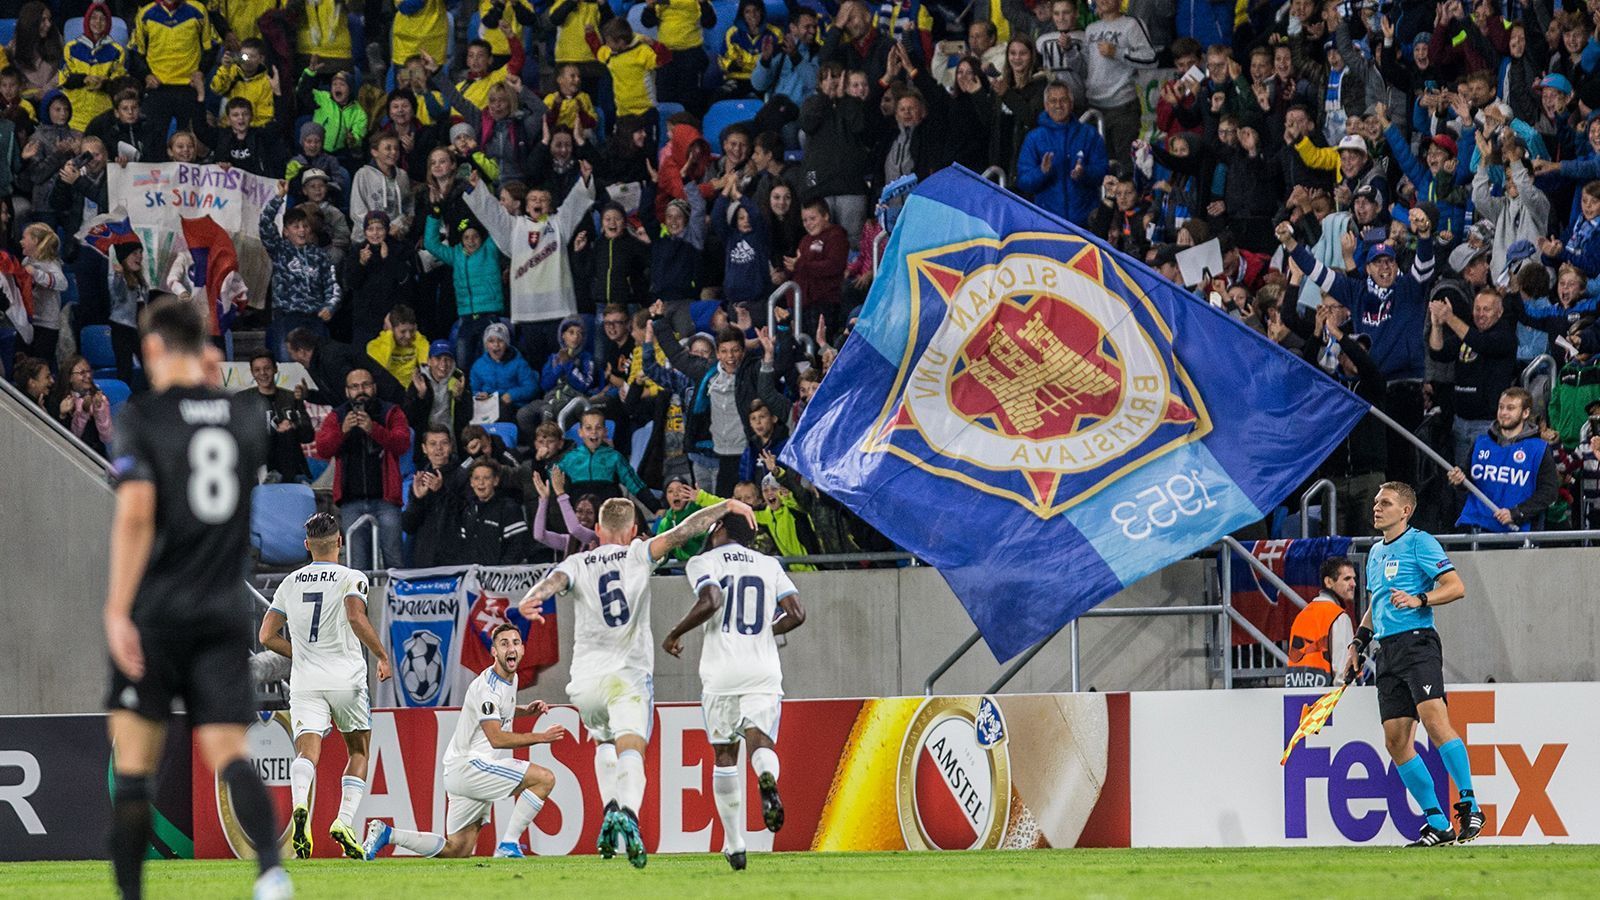 
                <strong>Slowakei: Slovan Bratislava</strong><br>
                In der Slowakei ist der FK Slovan Bratislava Meister. Es ist der zehnte Ligatitel in der Vereinsgeschichte. Auch in der Slowakei durften Zuschauer ins Stadion, allerdings in begrenzter Anzahl. Die Meisterschaft wurde auch hier regulär im Rahmen der alljährlichen Meisterrunde entschieden.
              